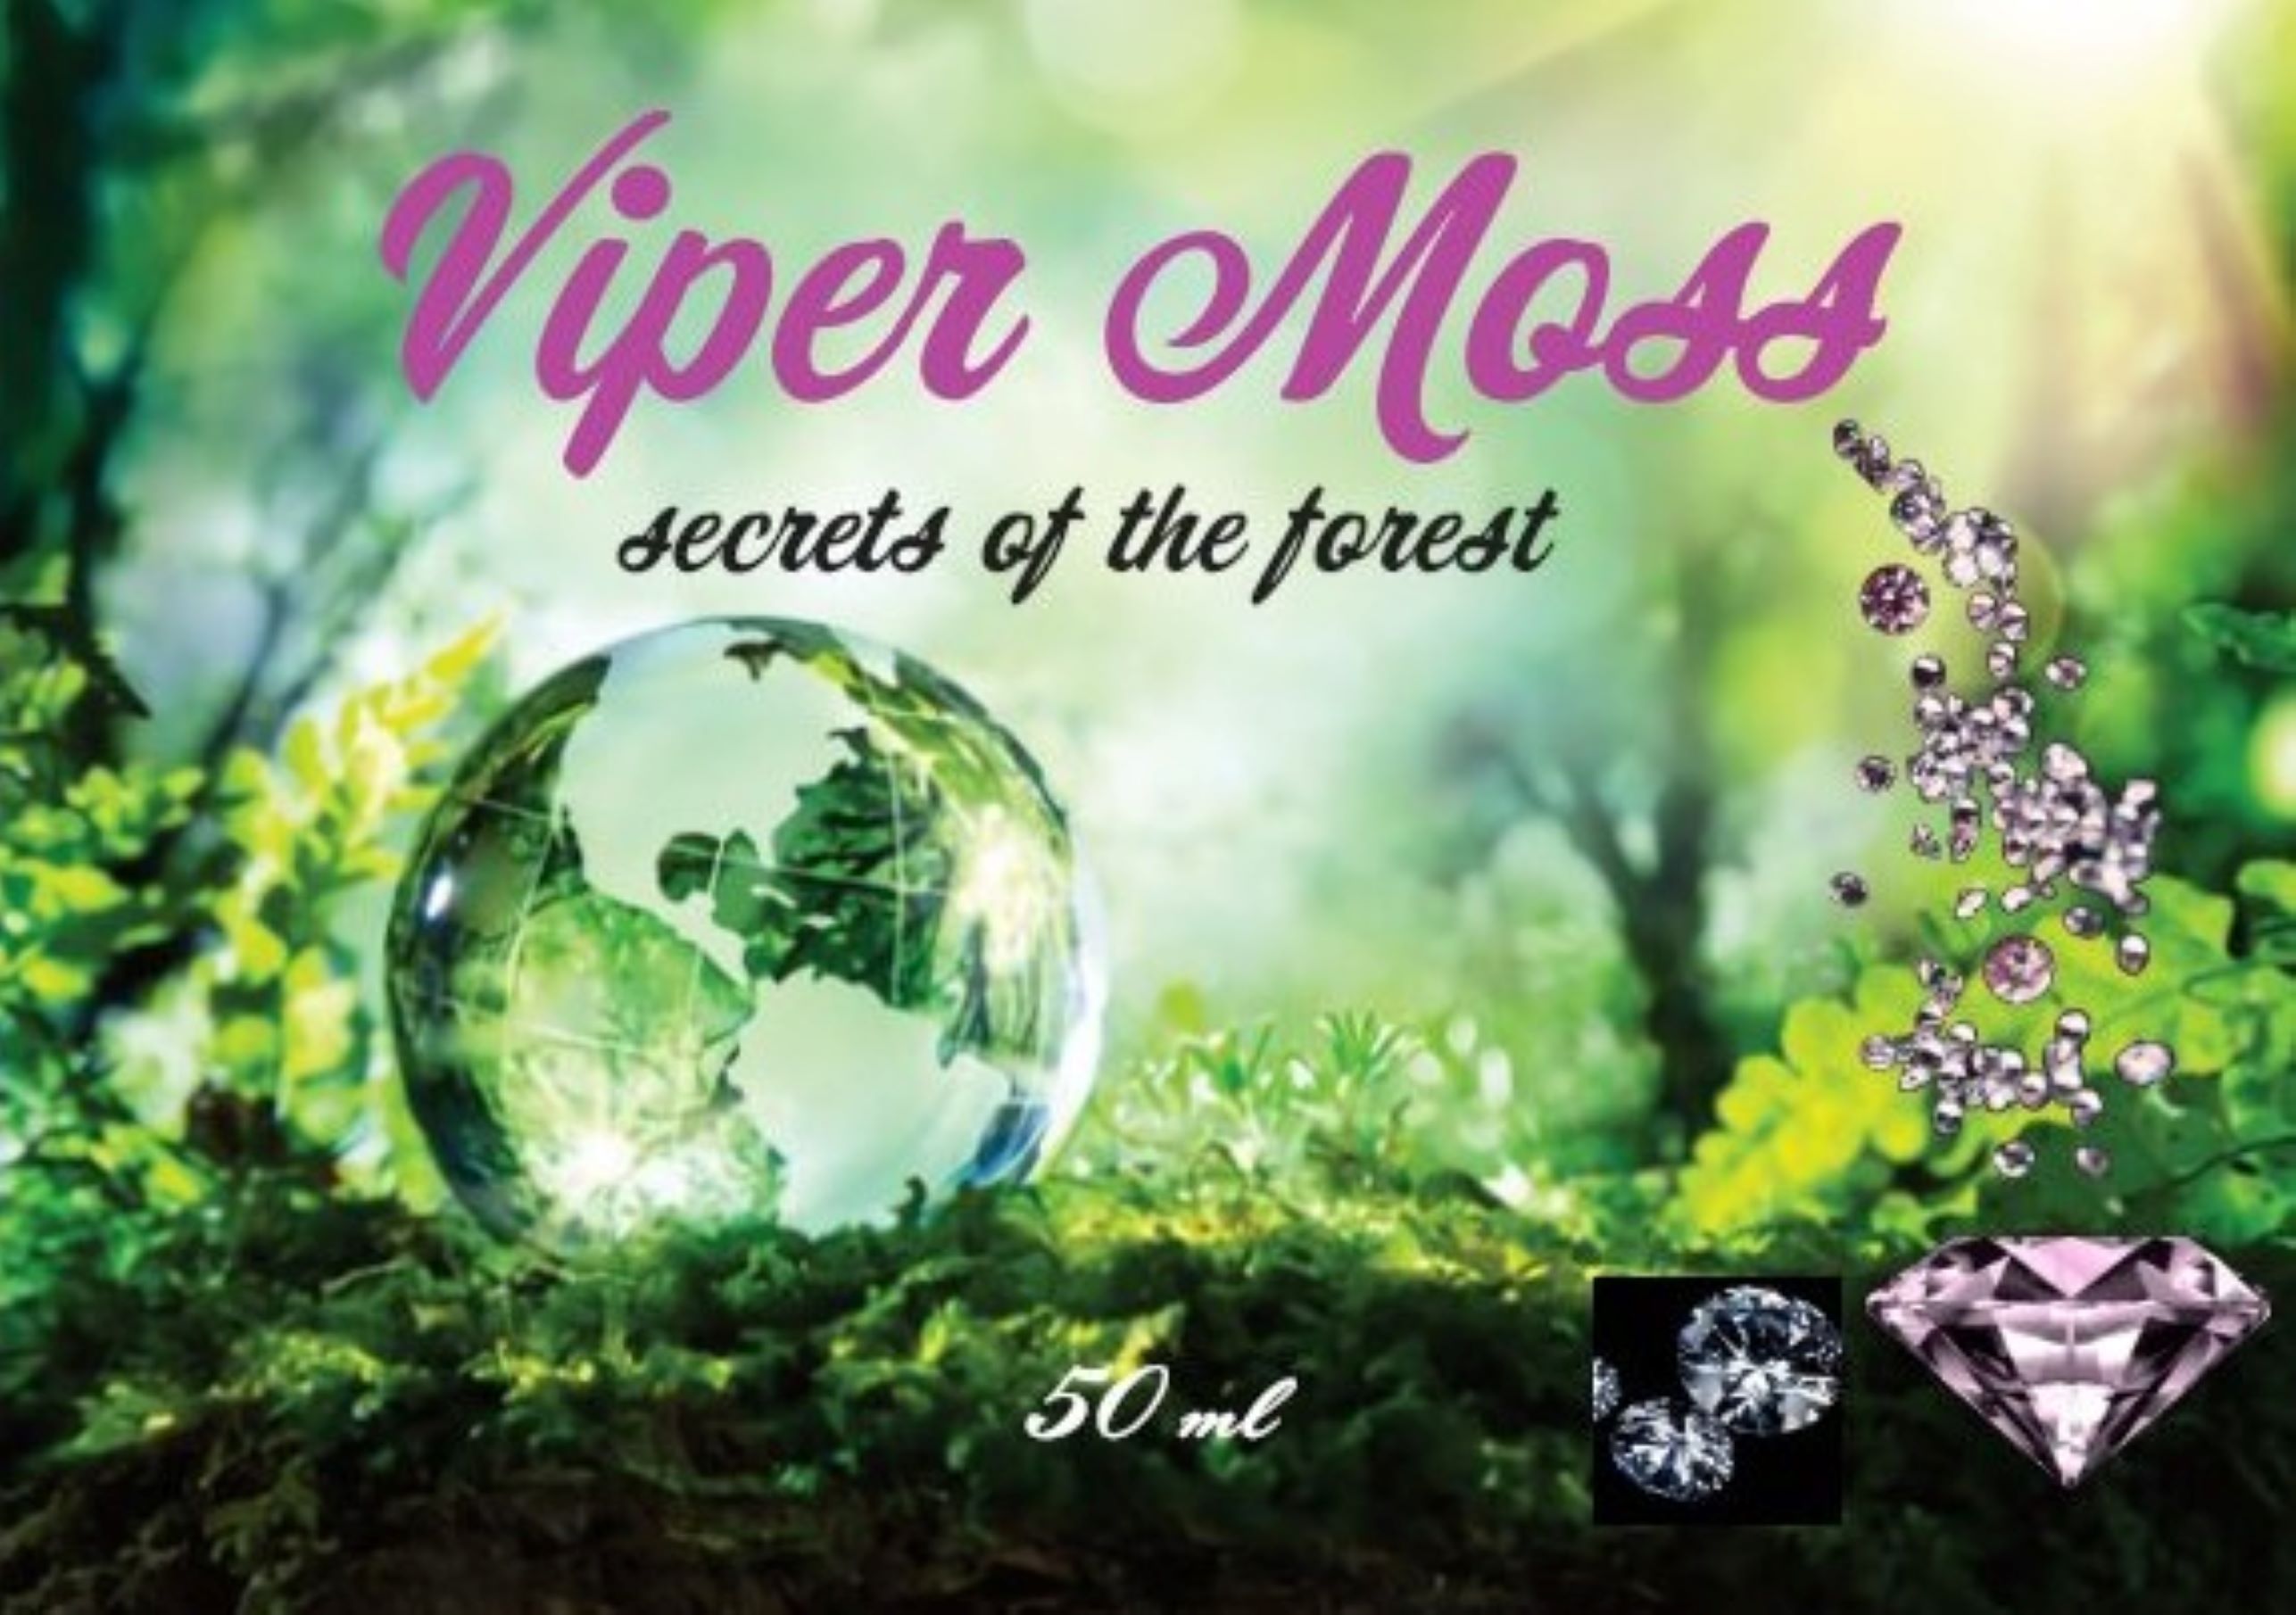 Viper_moos_2_hi